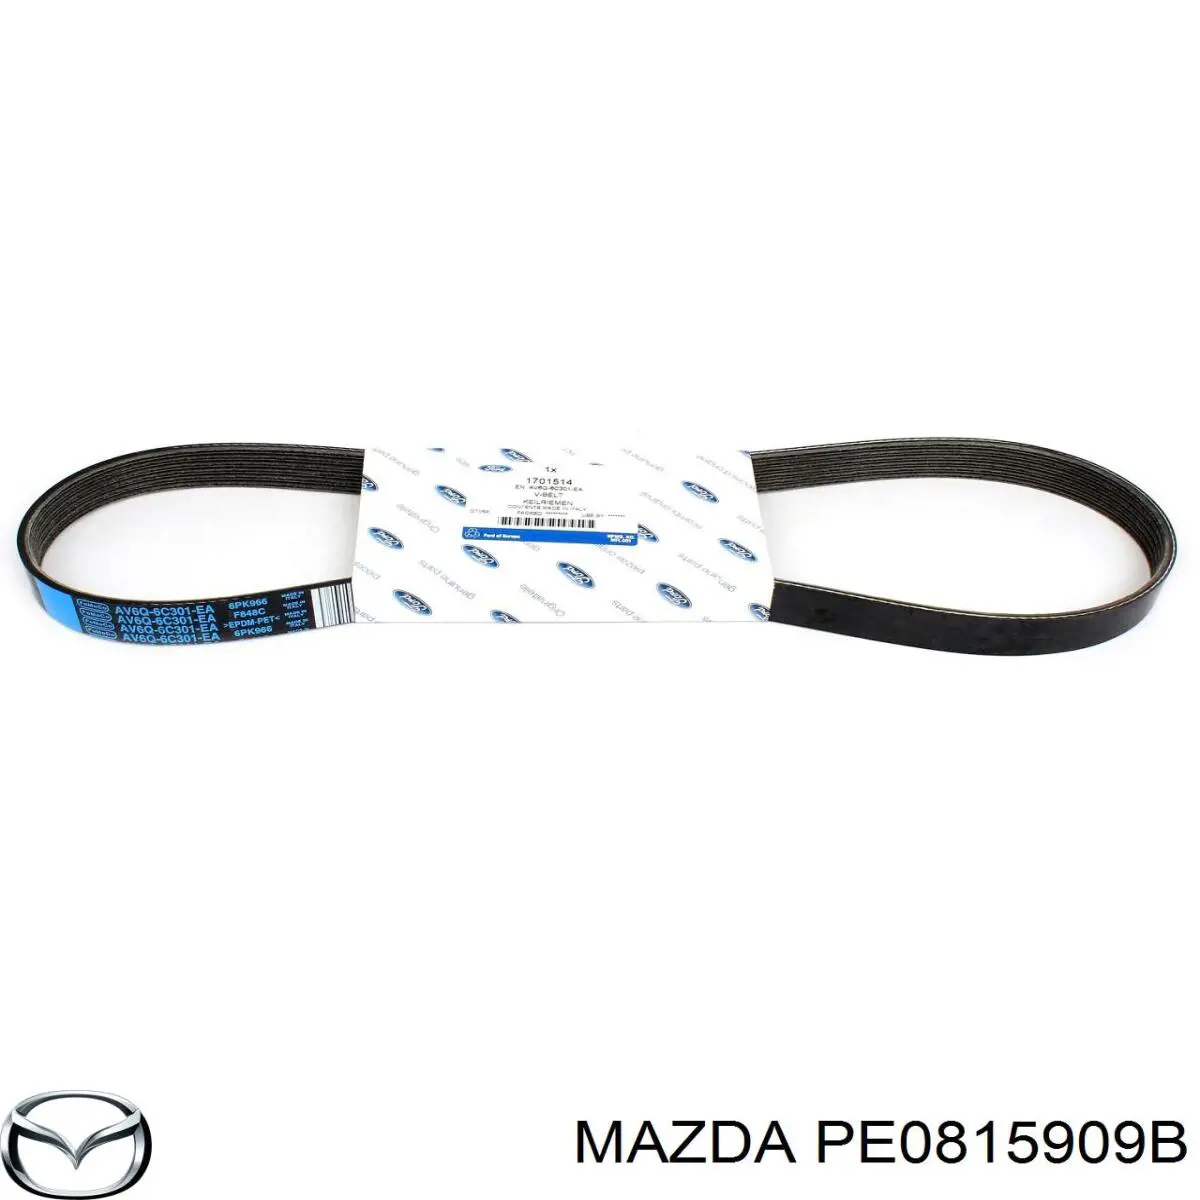 PE0815909B Mazda correa trapezoidal